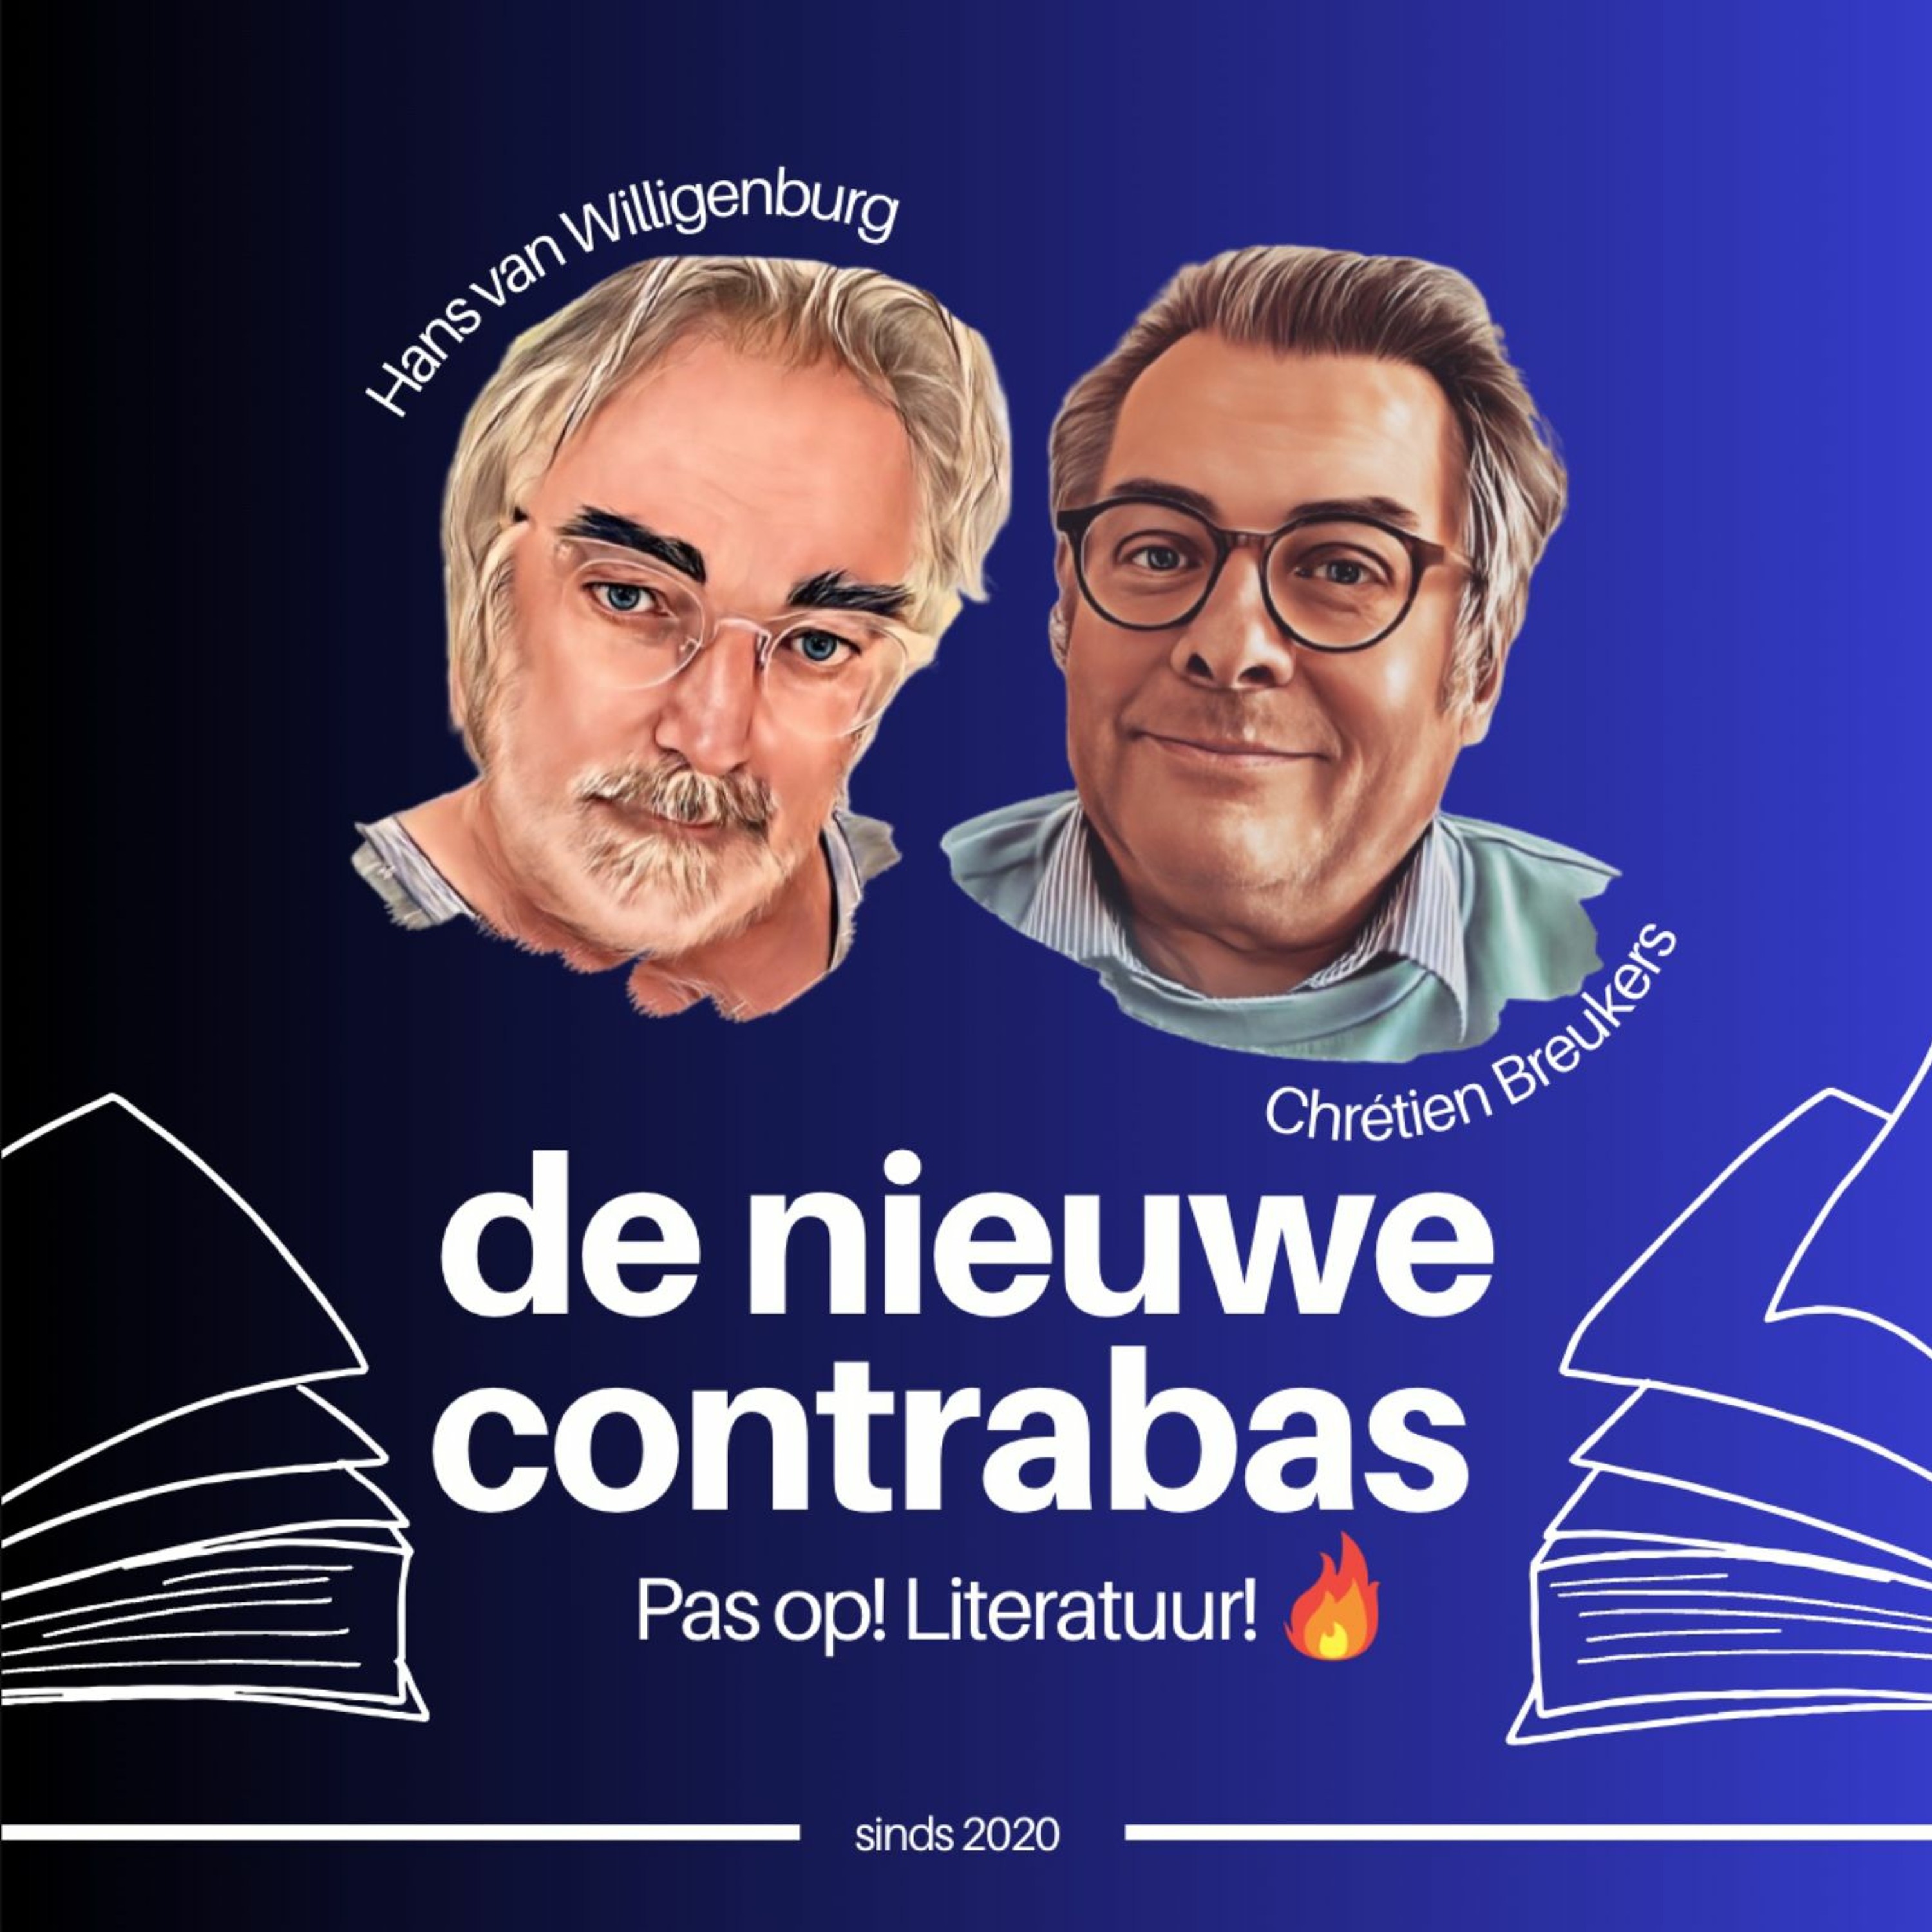 131 - De Nieuwe Contrabas podcast - Wouter Godijn grijpt naar de macht